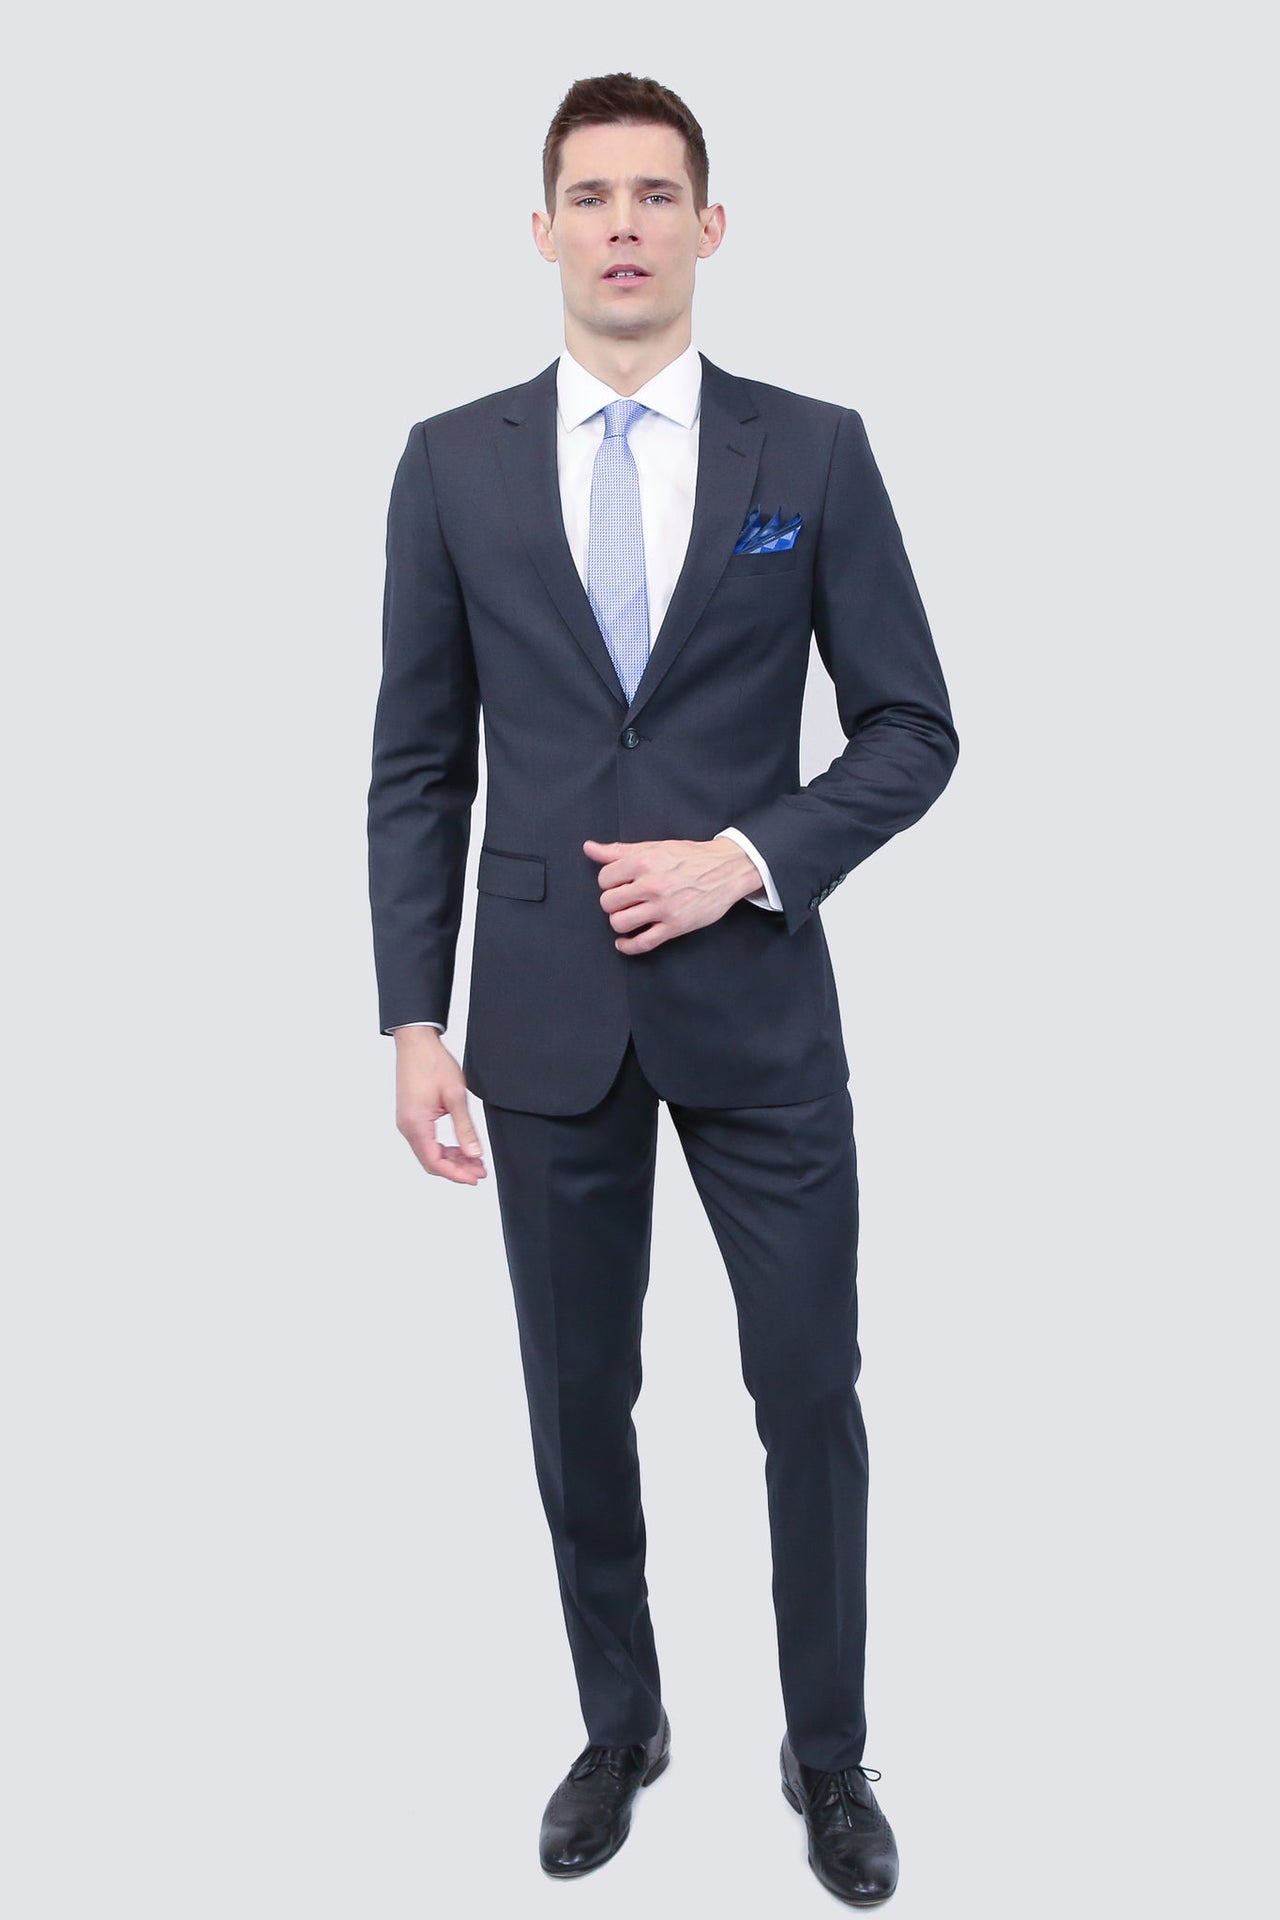 Tailor's Stretch Blend Suit | Charcoal Grey | Shop Suits Online ...